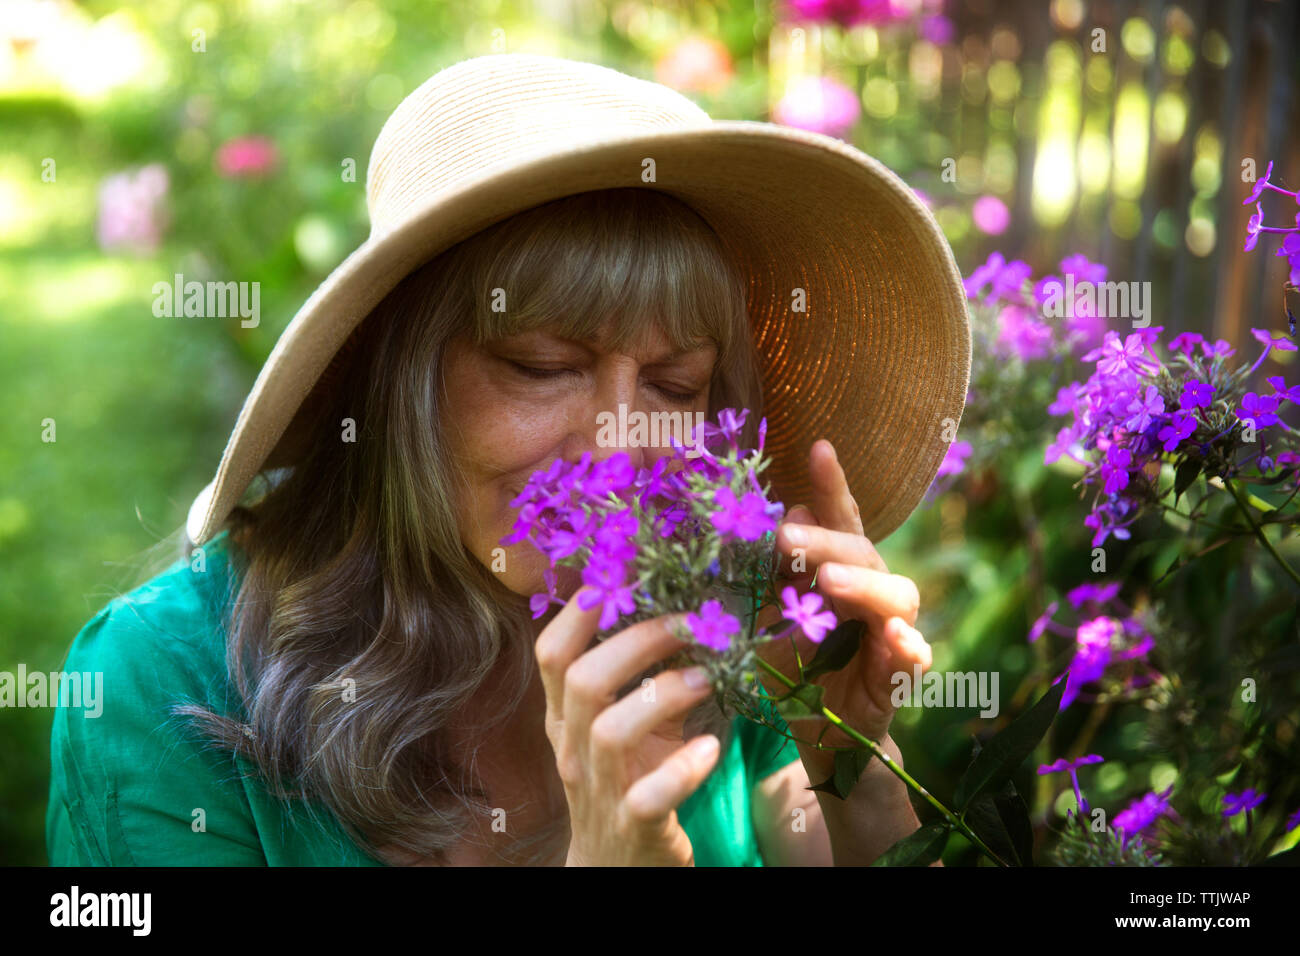 Senior woman with eyes closed smelling fleurs violettes dans le jardin Banque D'Images